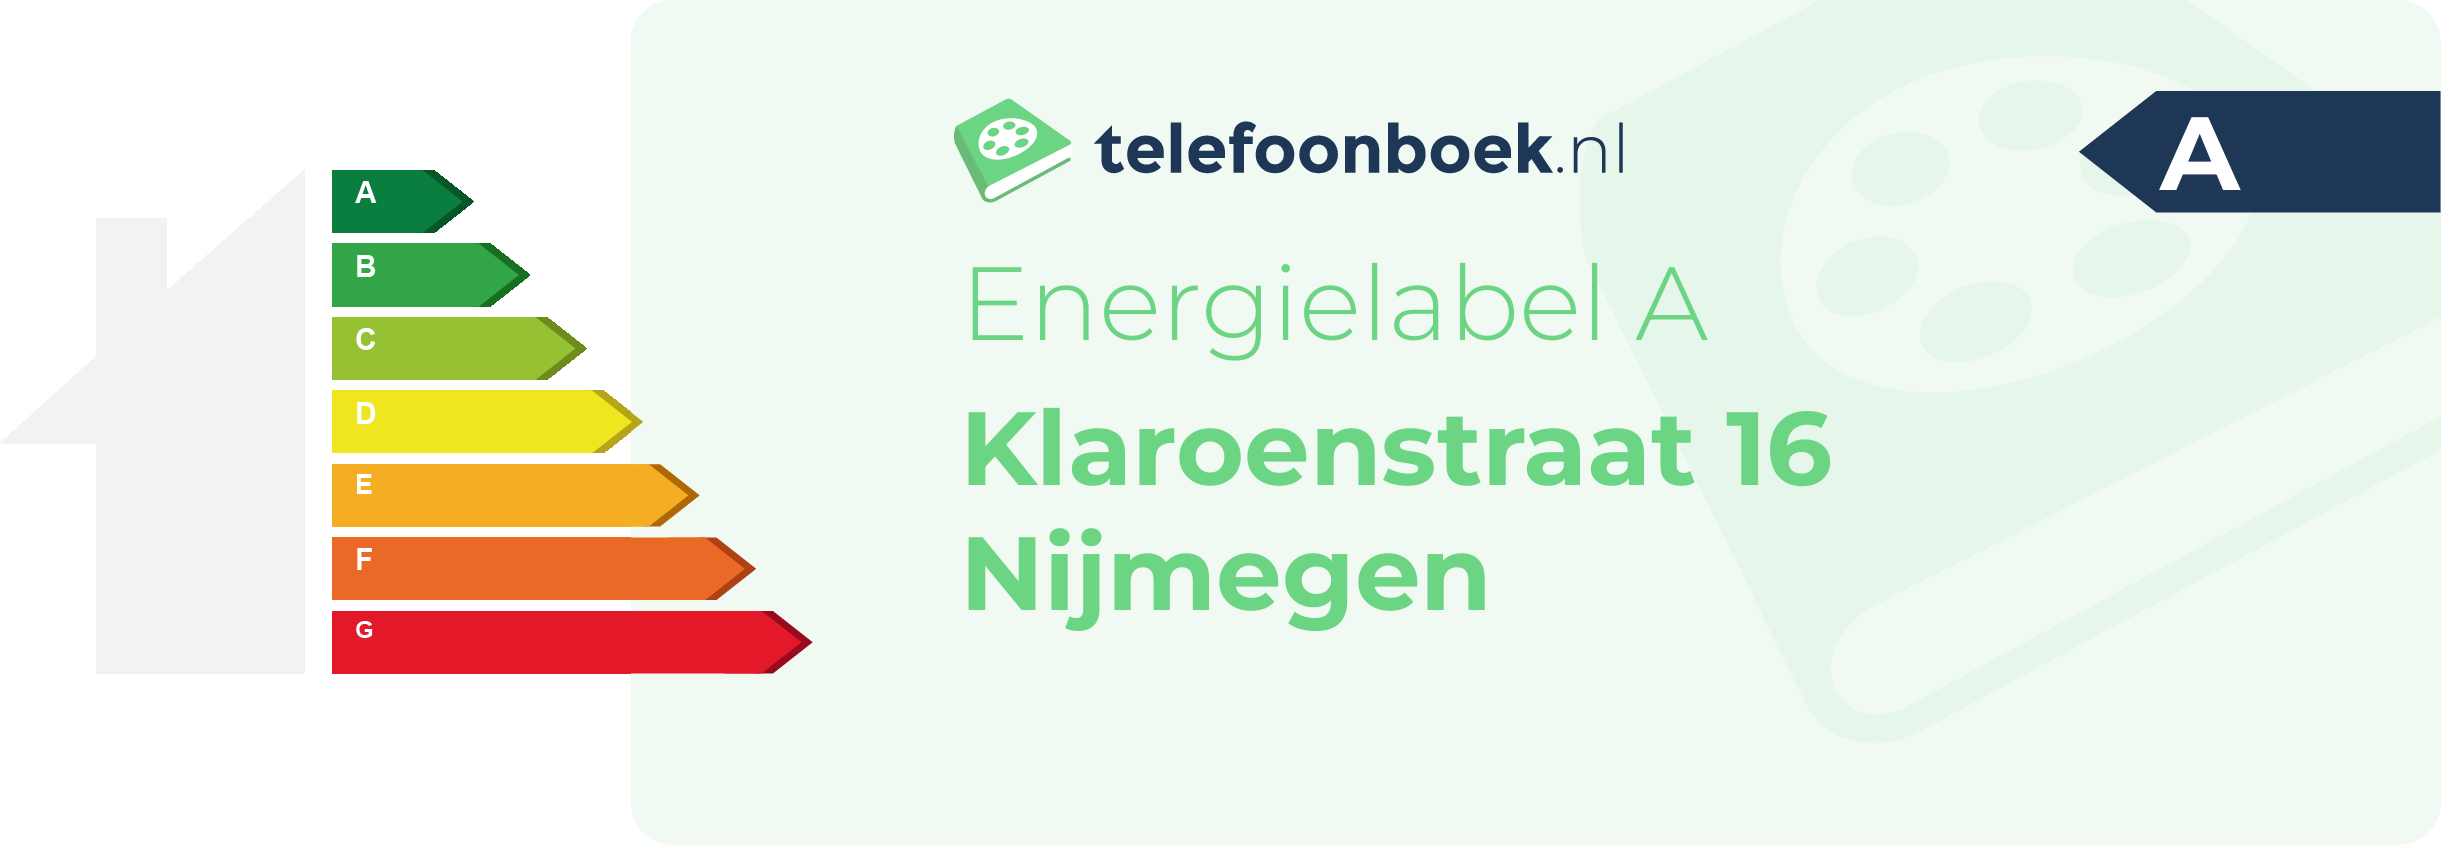 Energielabel Klaroenstraat 16 Nijmegen